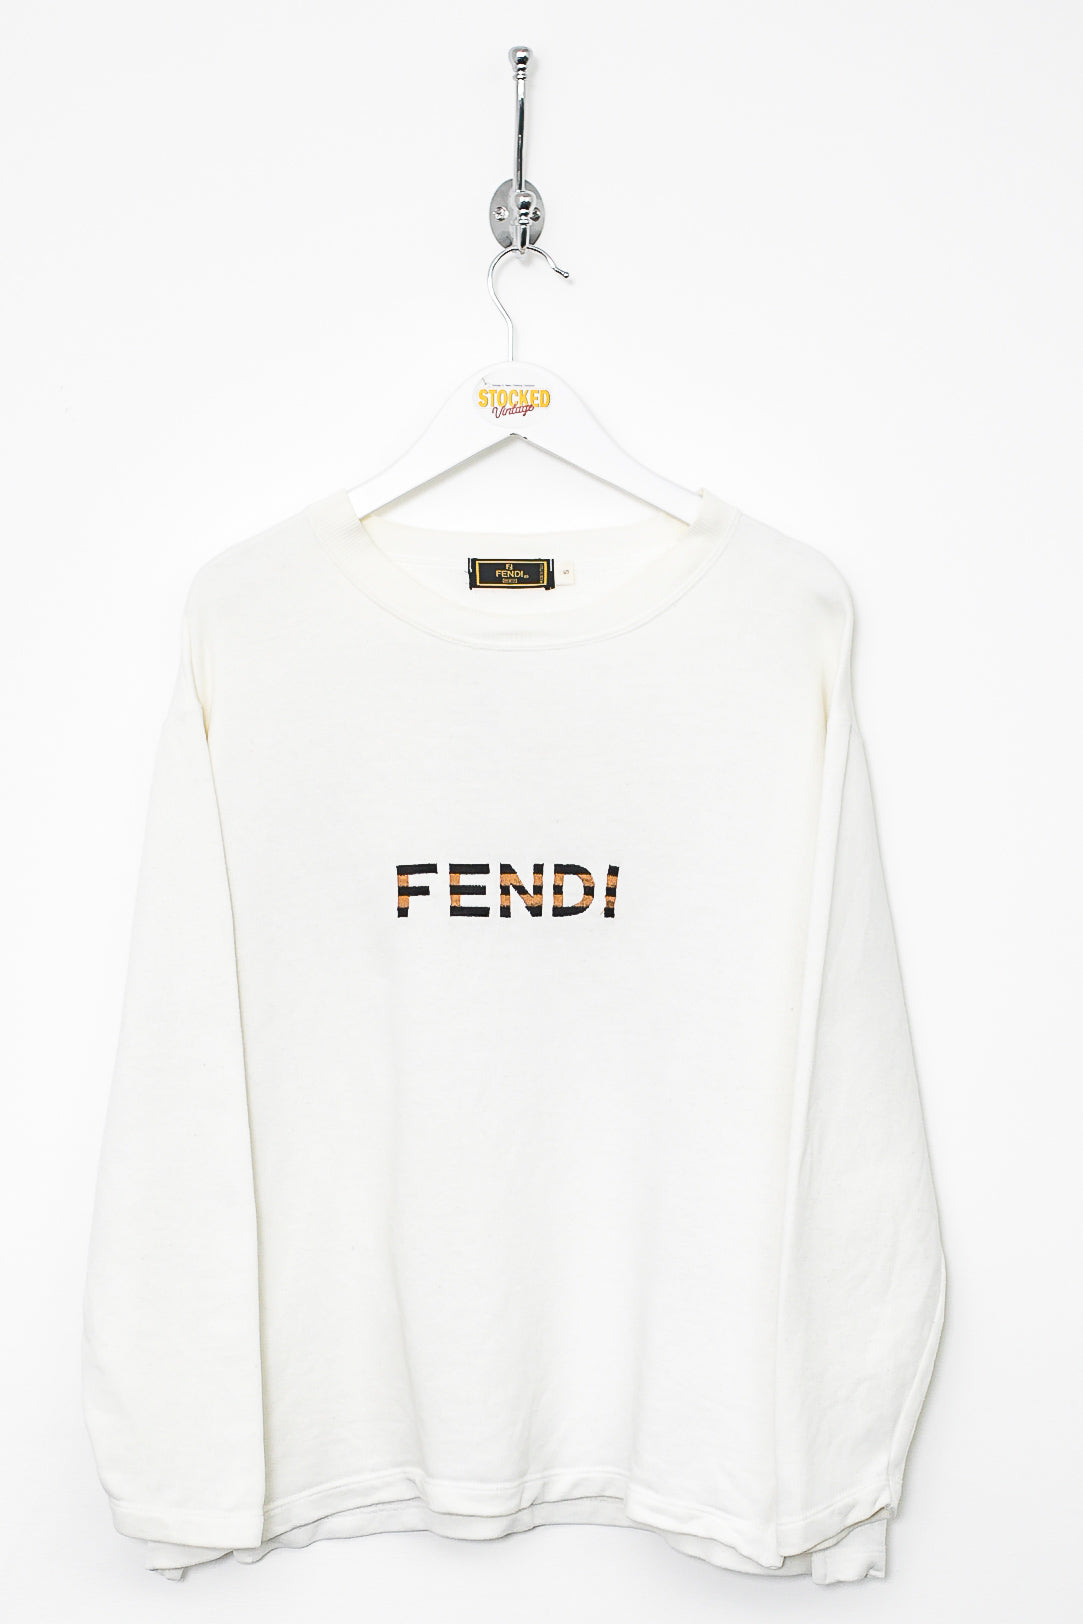 Womens 90s Fendi Sweatshirt (S)